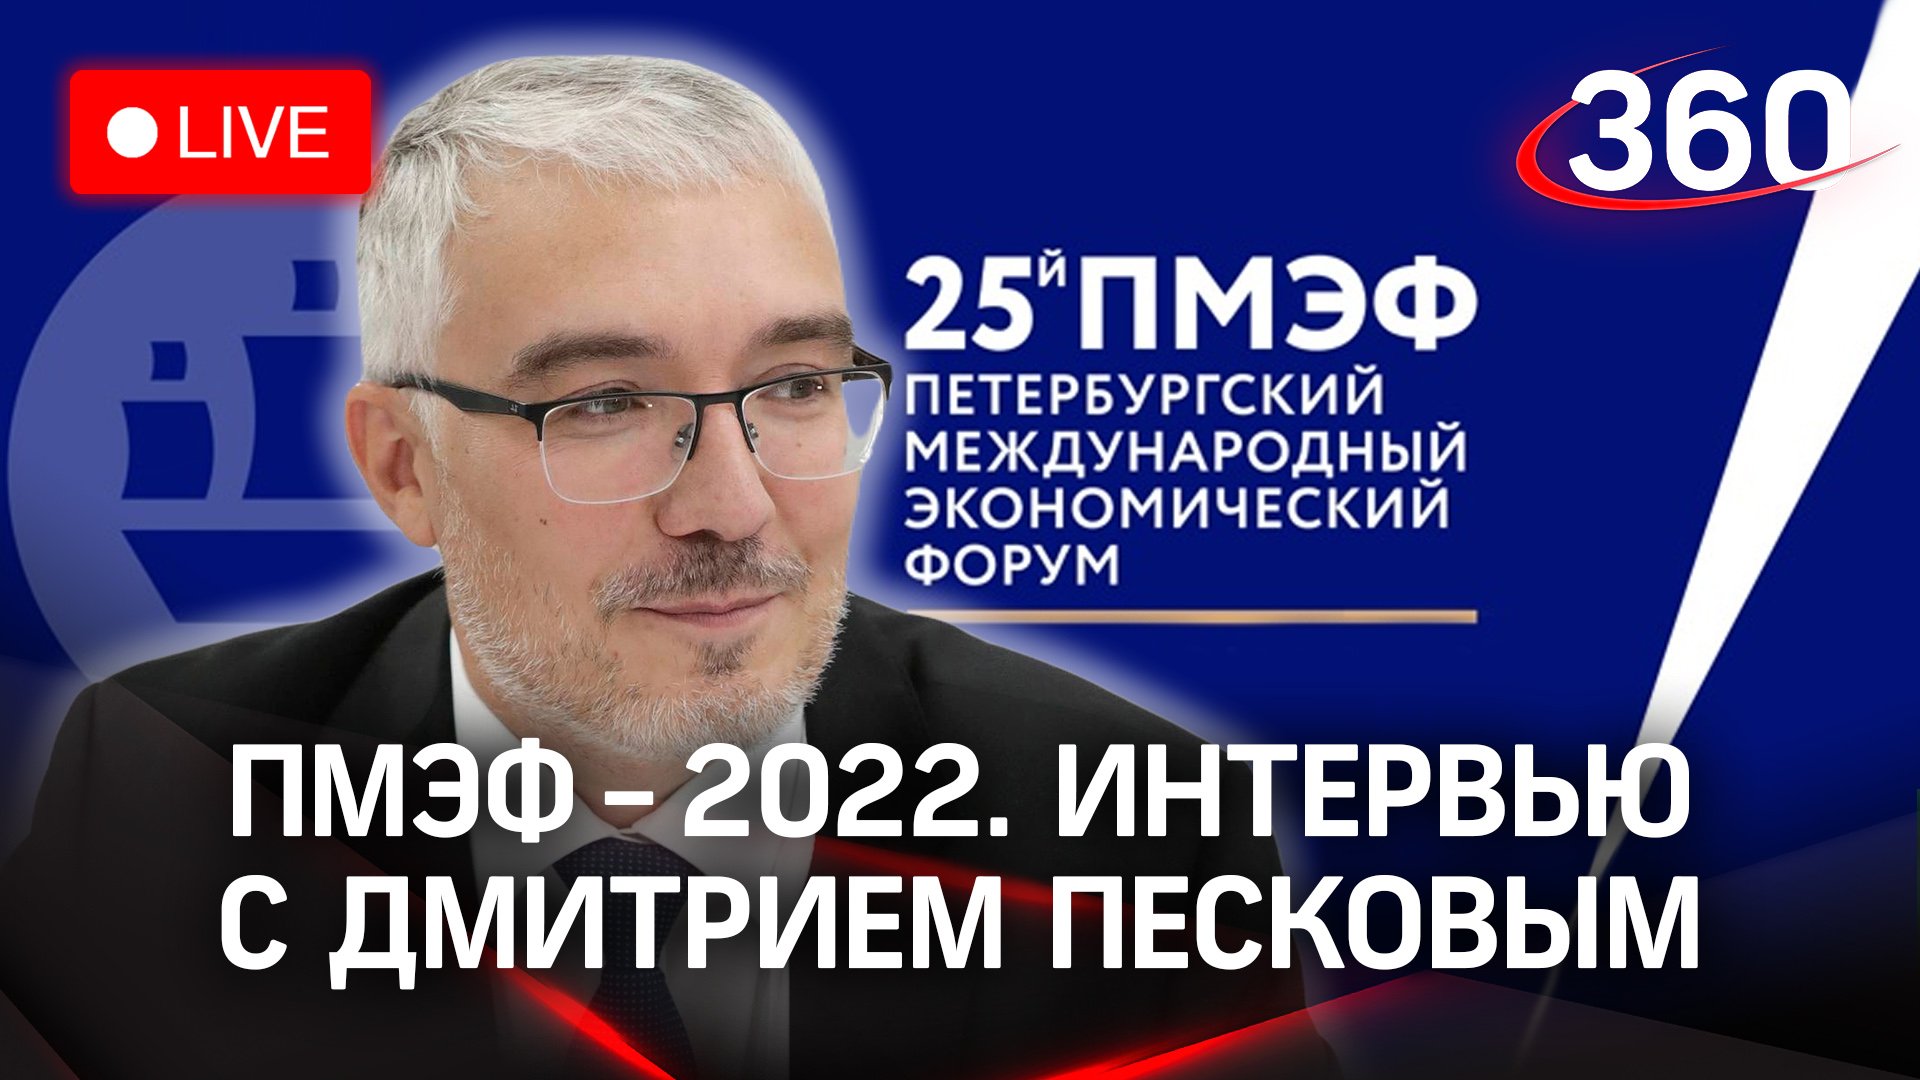 ПМЭФ-2022: интервью с Дмитрий Песковым. Траектории карьерного роста и социальный лифт